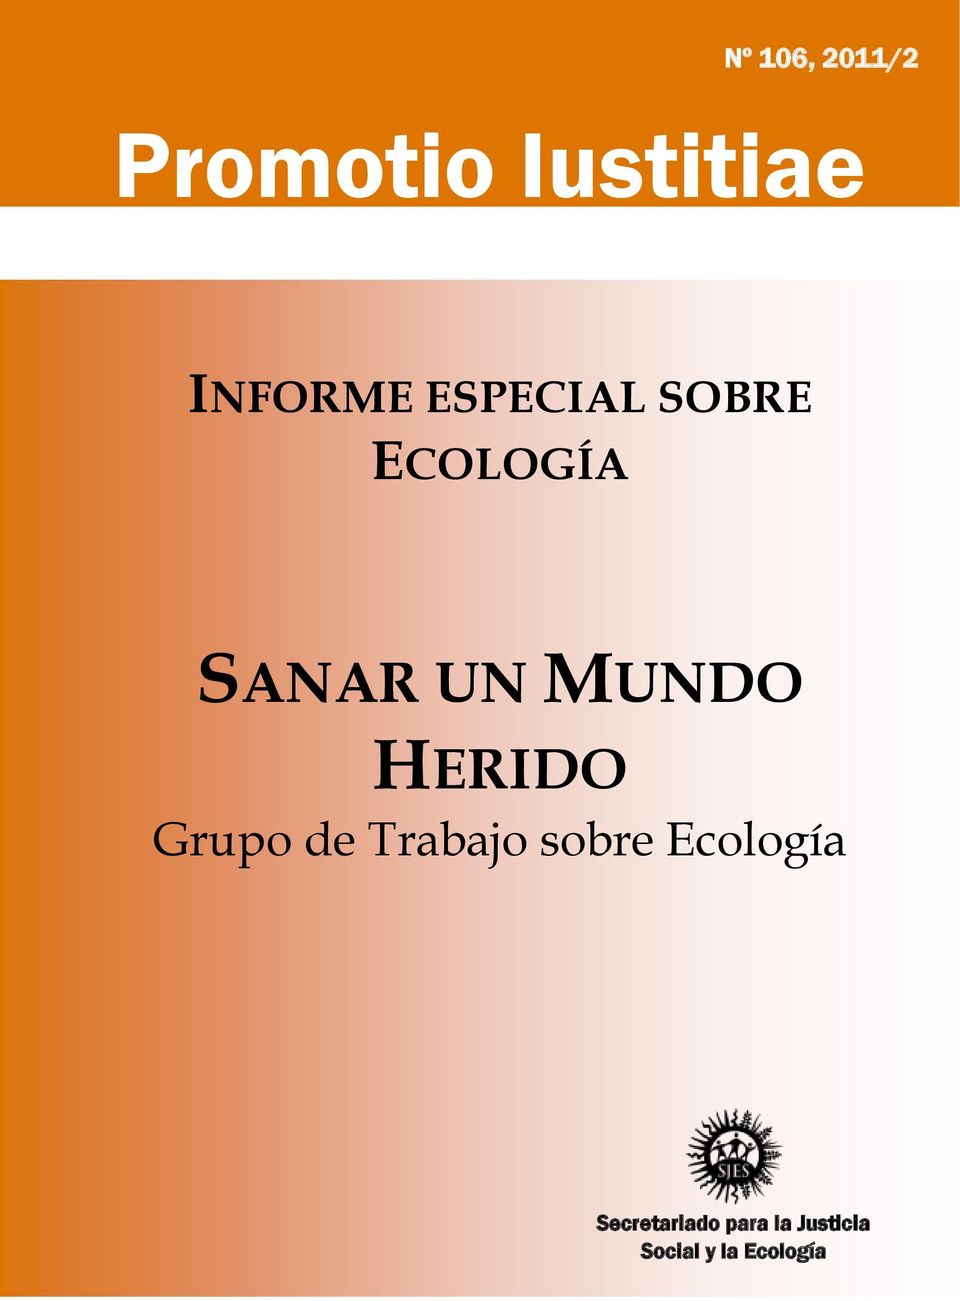 HERIDO Grupo de Trabajo sobre Ecología